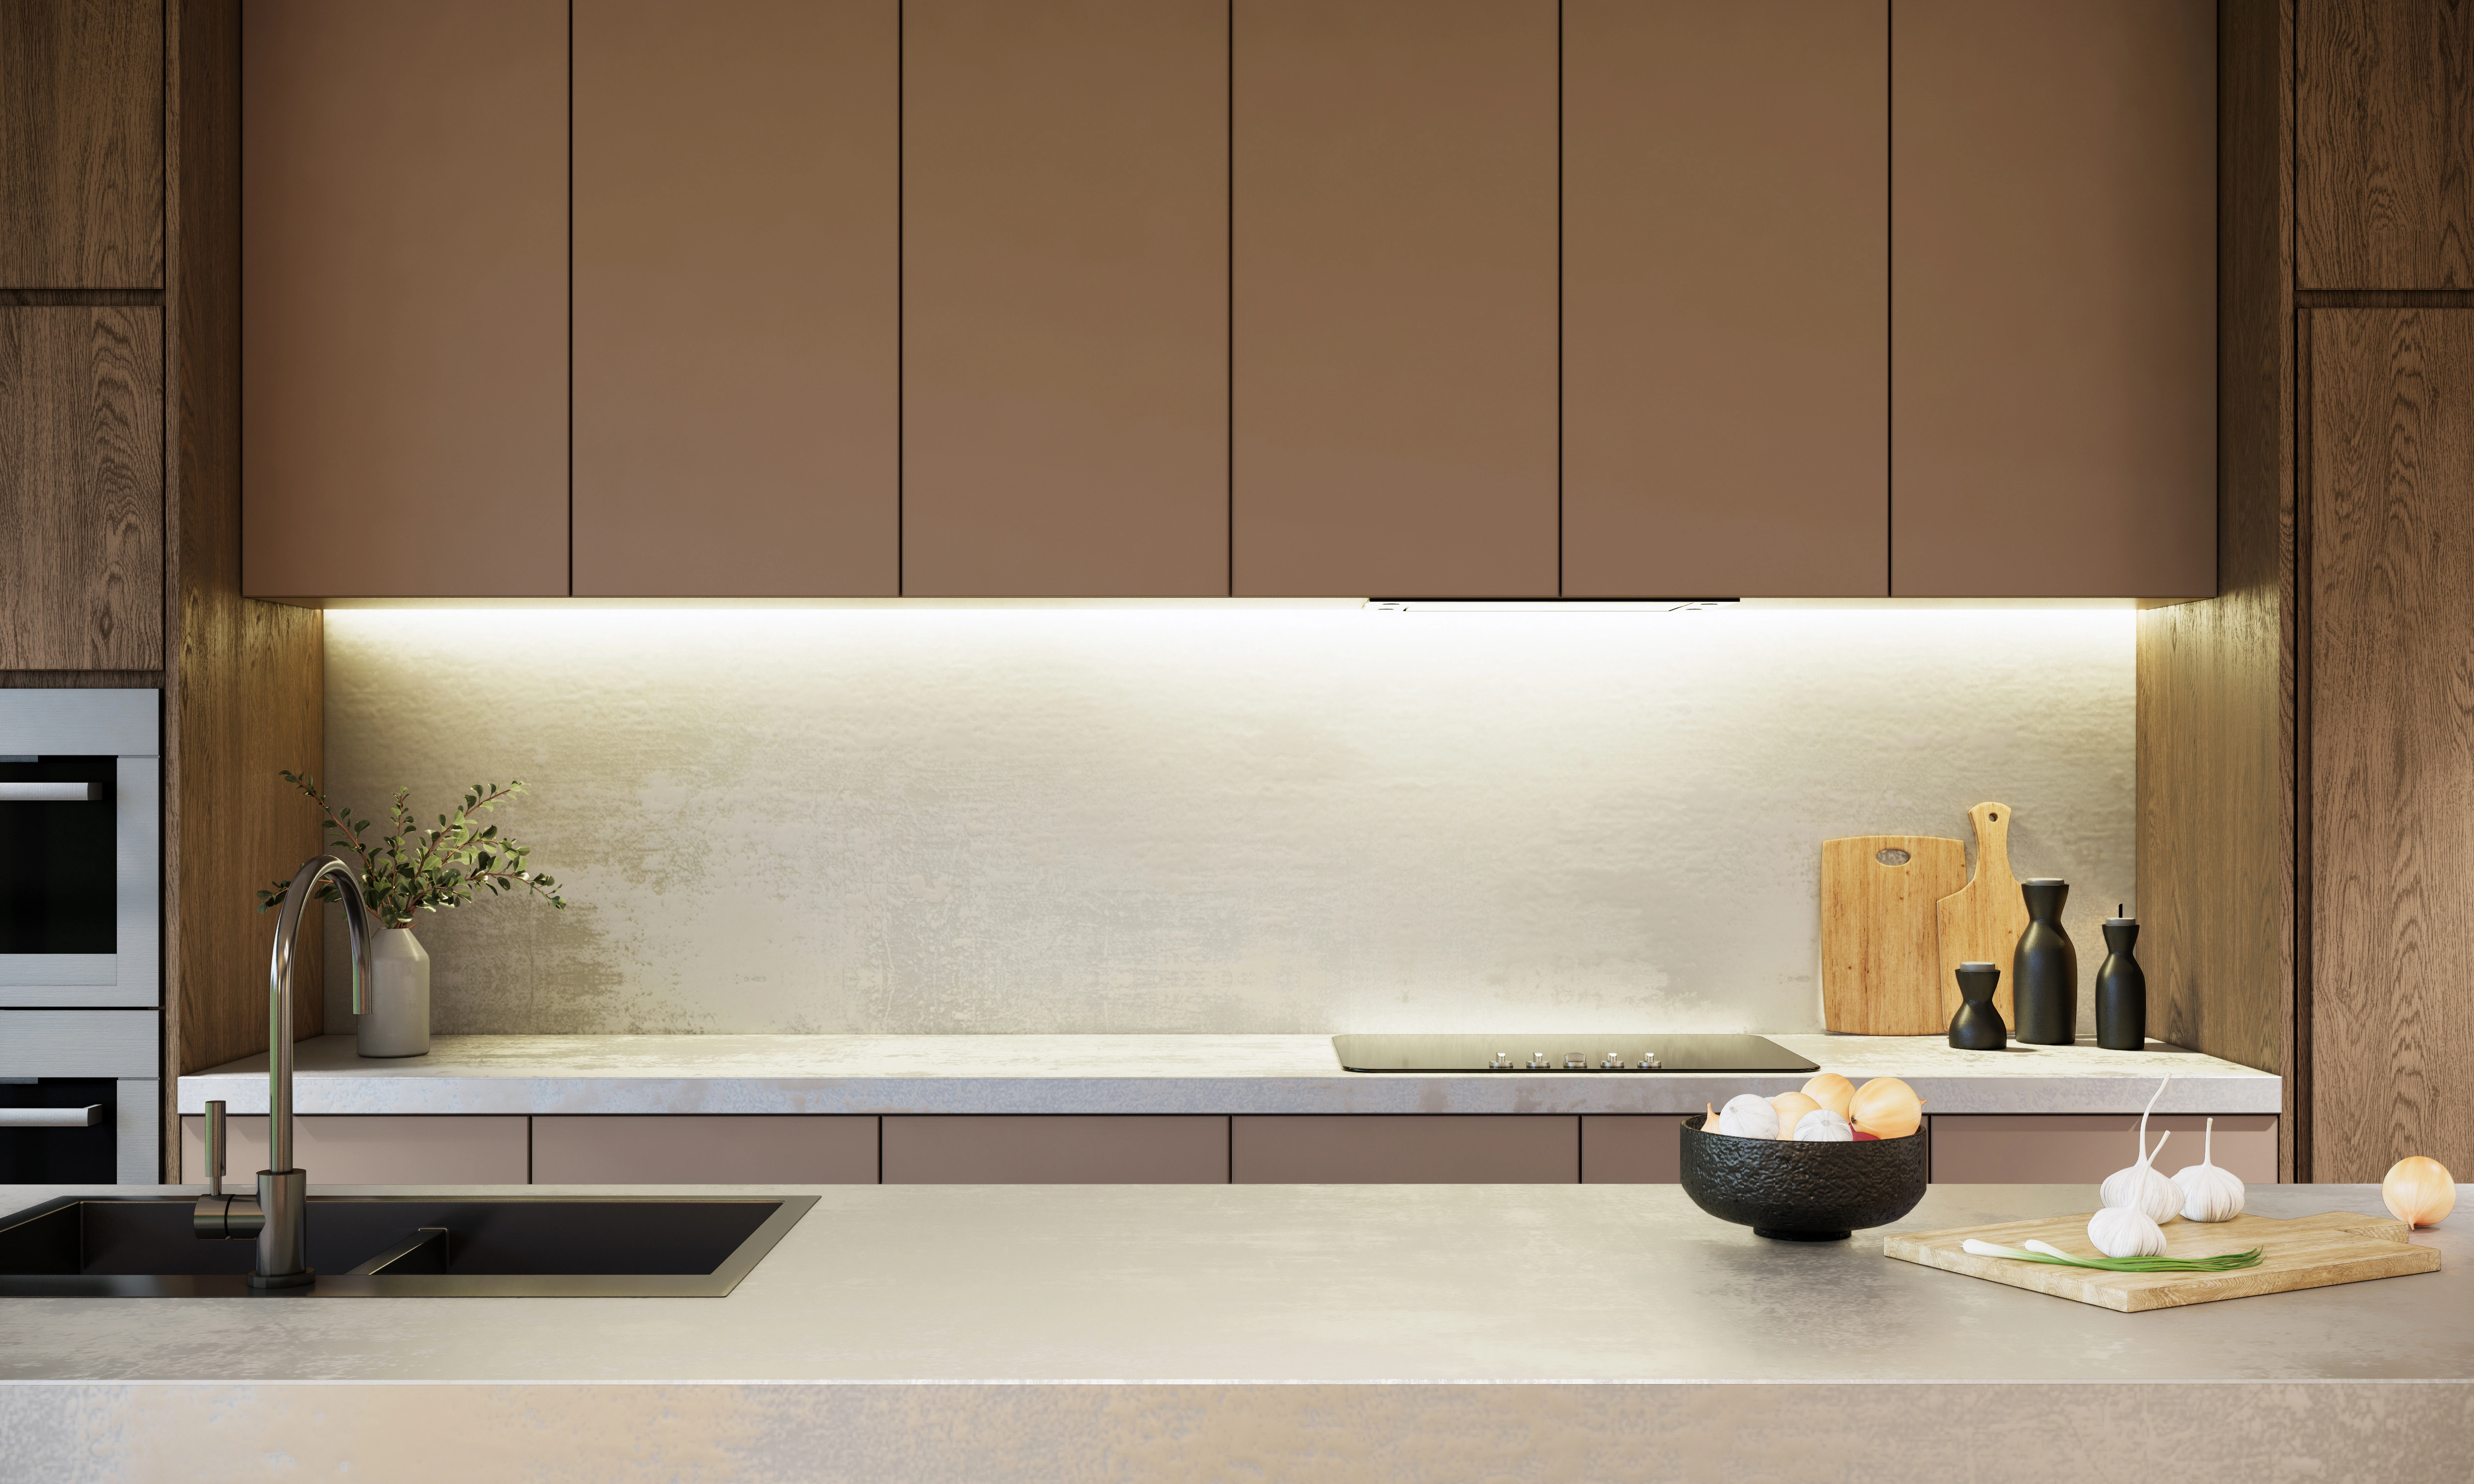 Inspiracja prezentująca kuchnię w kolorze brązowym z brązową zabudową, styl japoński. Element charakterystyczny: brązowa zabudowa